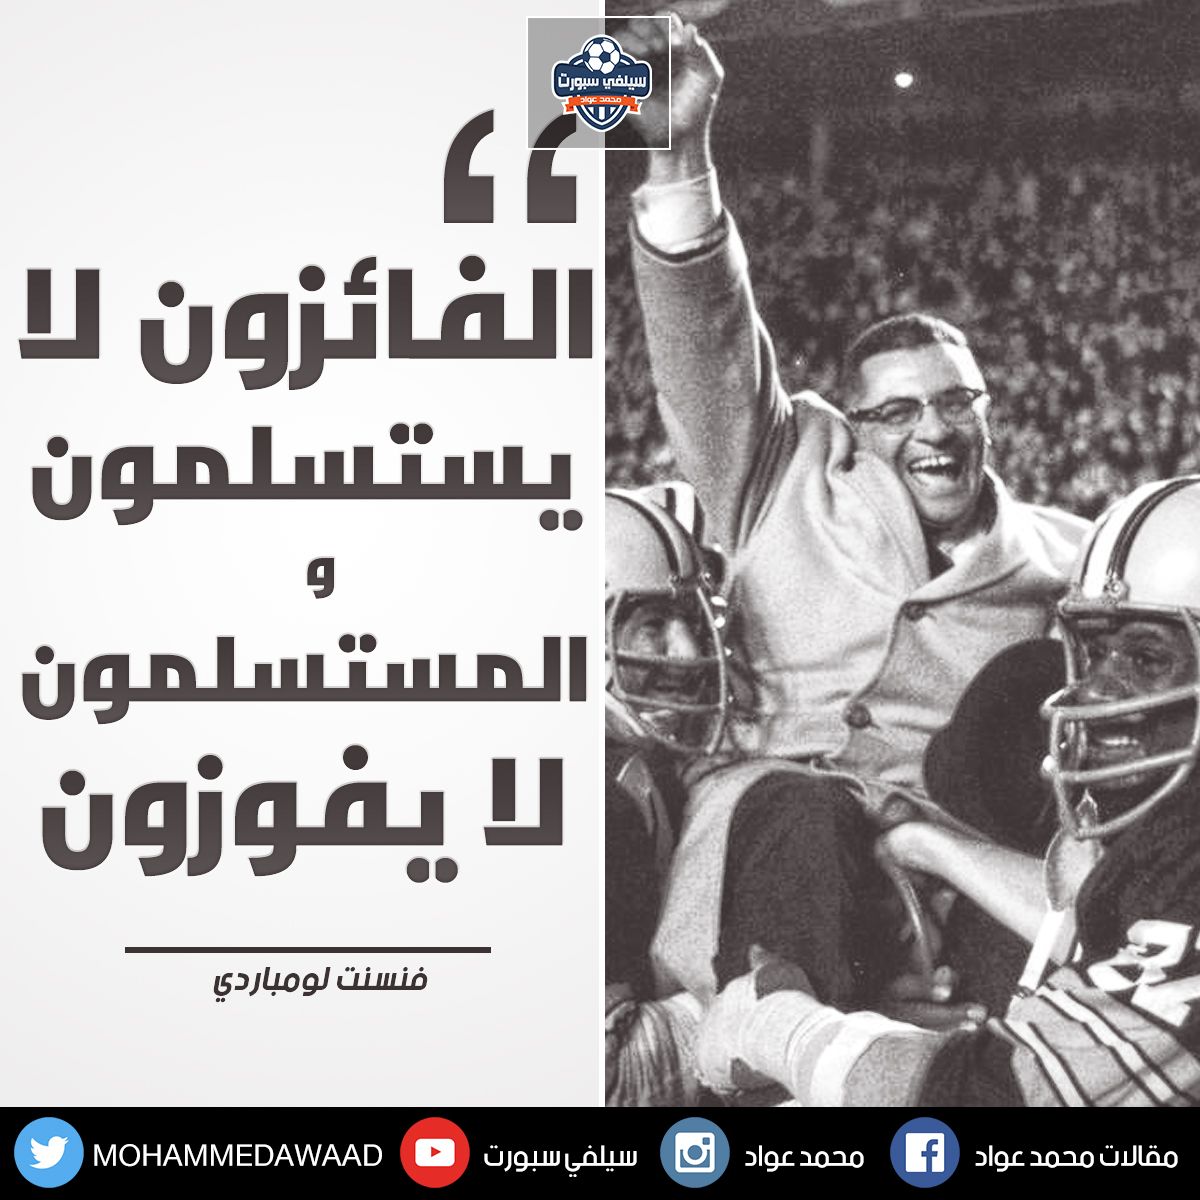 محمد عواد Twitterissa كلام جميل من فنسنت لومباردي مدرب كرة القدم